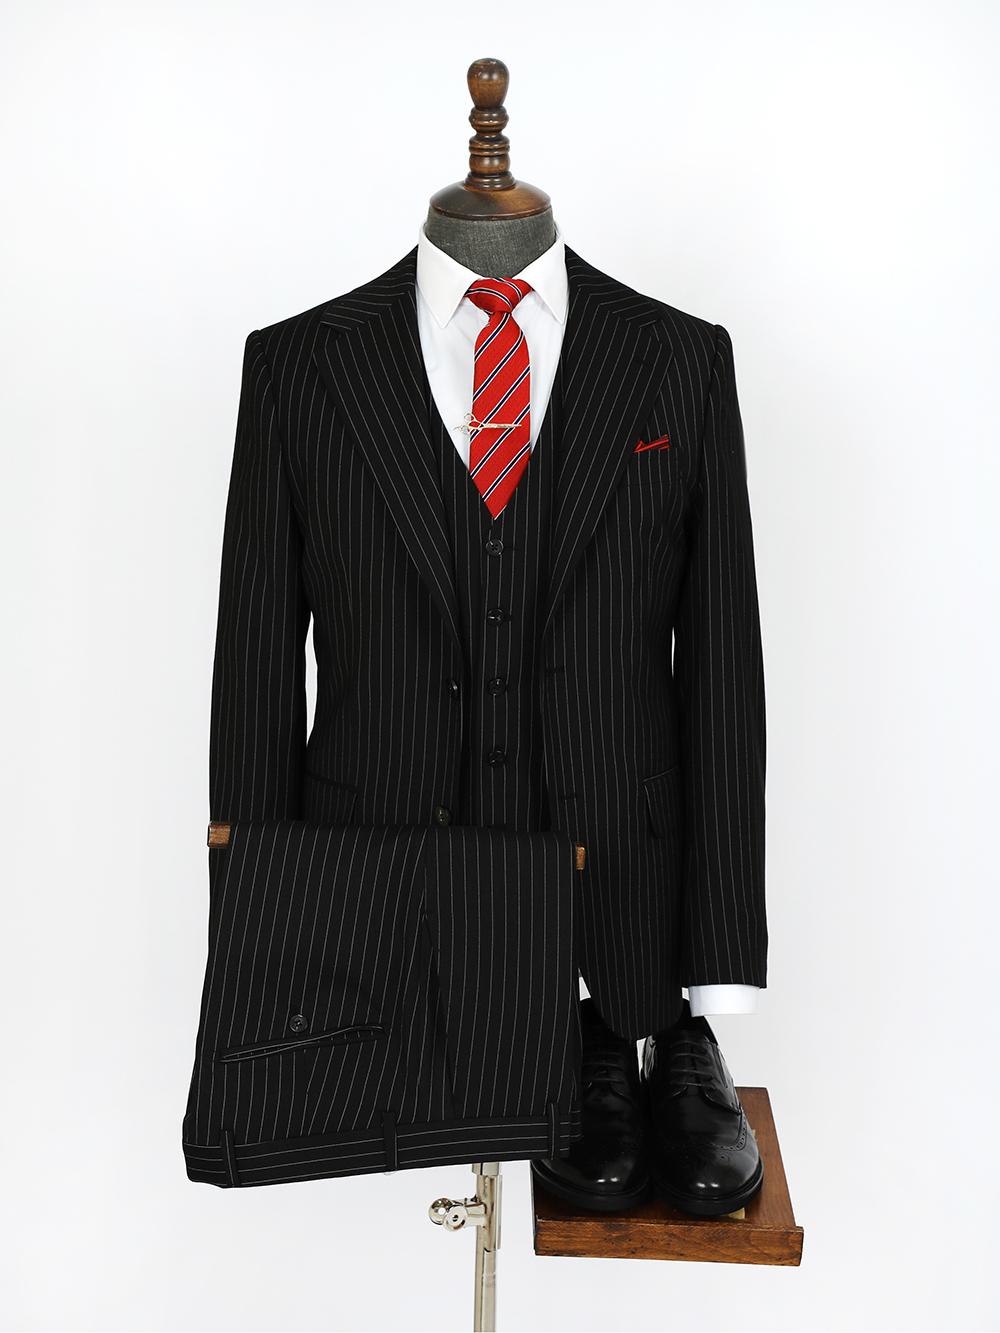 Three Piece Rock Black Oak Bespoke Men Suit Tailored